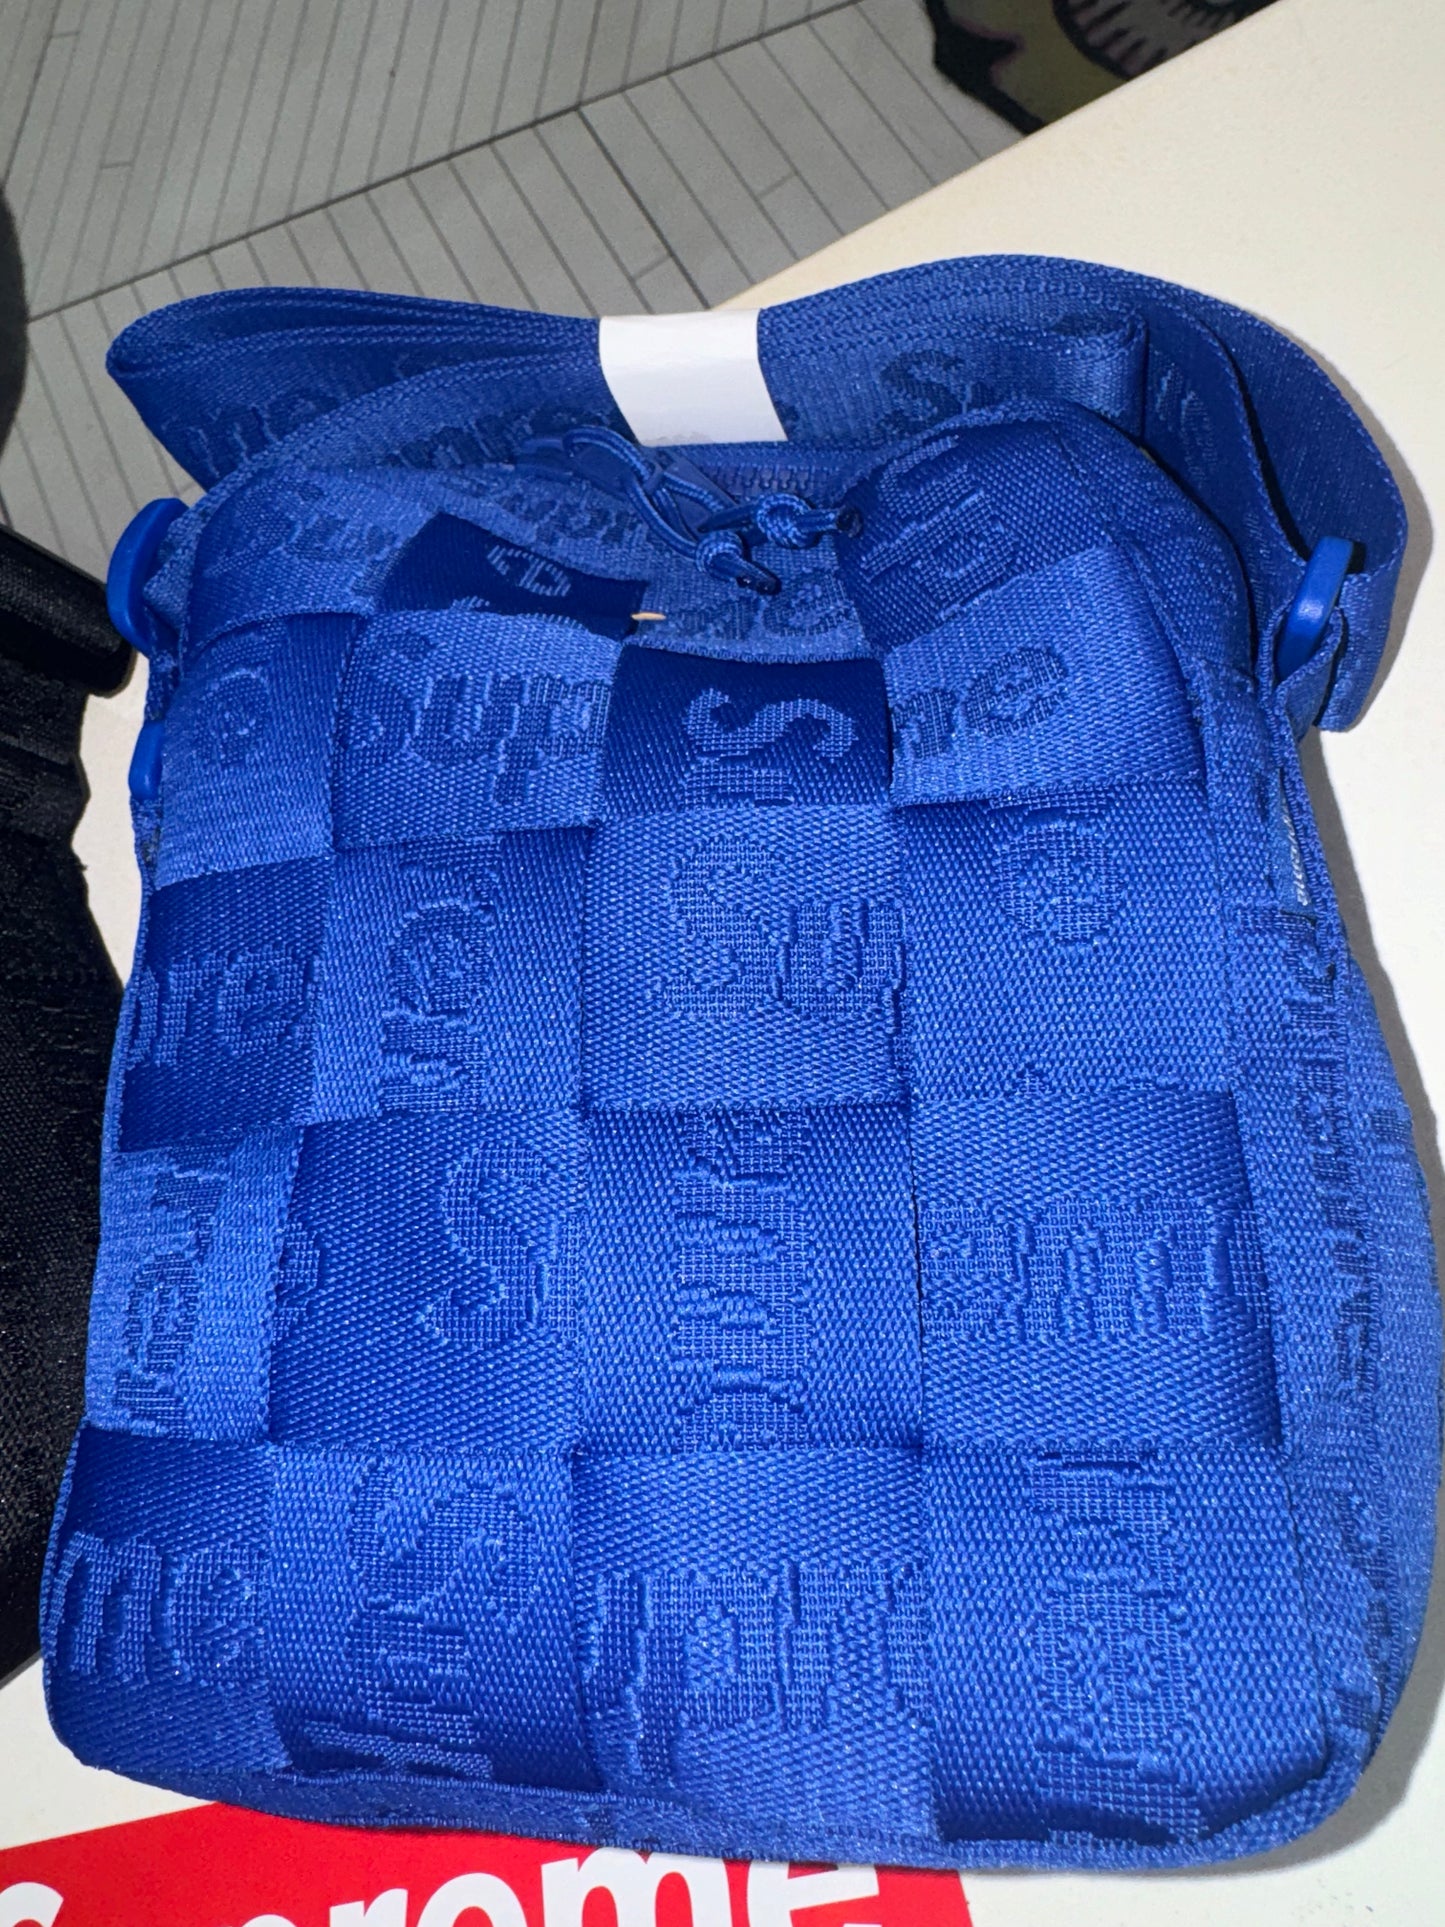 Supreme Woven Shoulder Bag (SS24) Blue